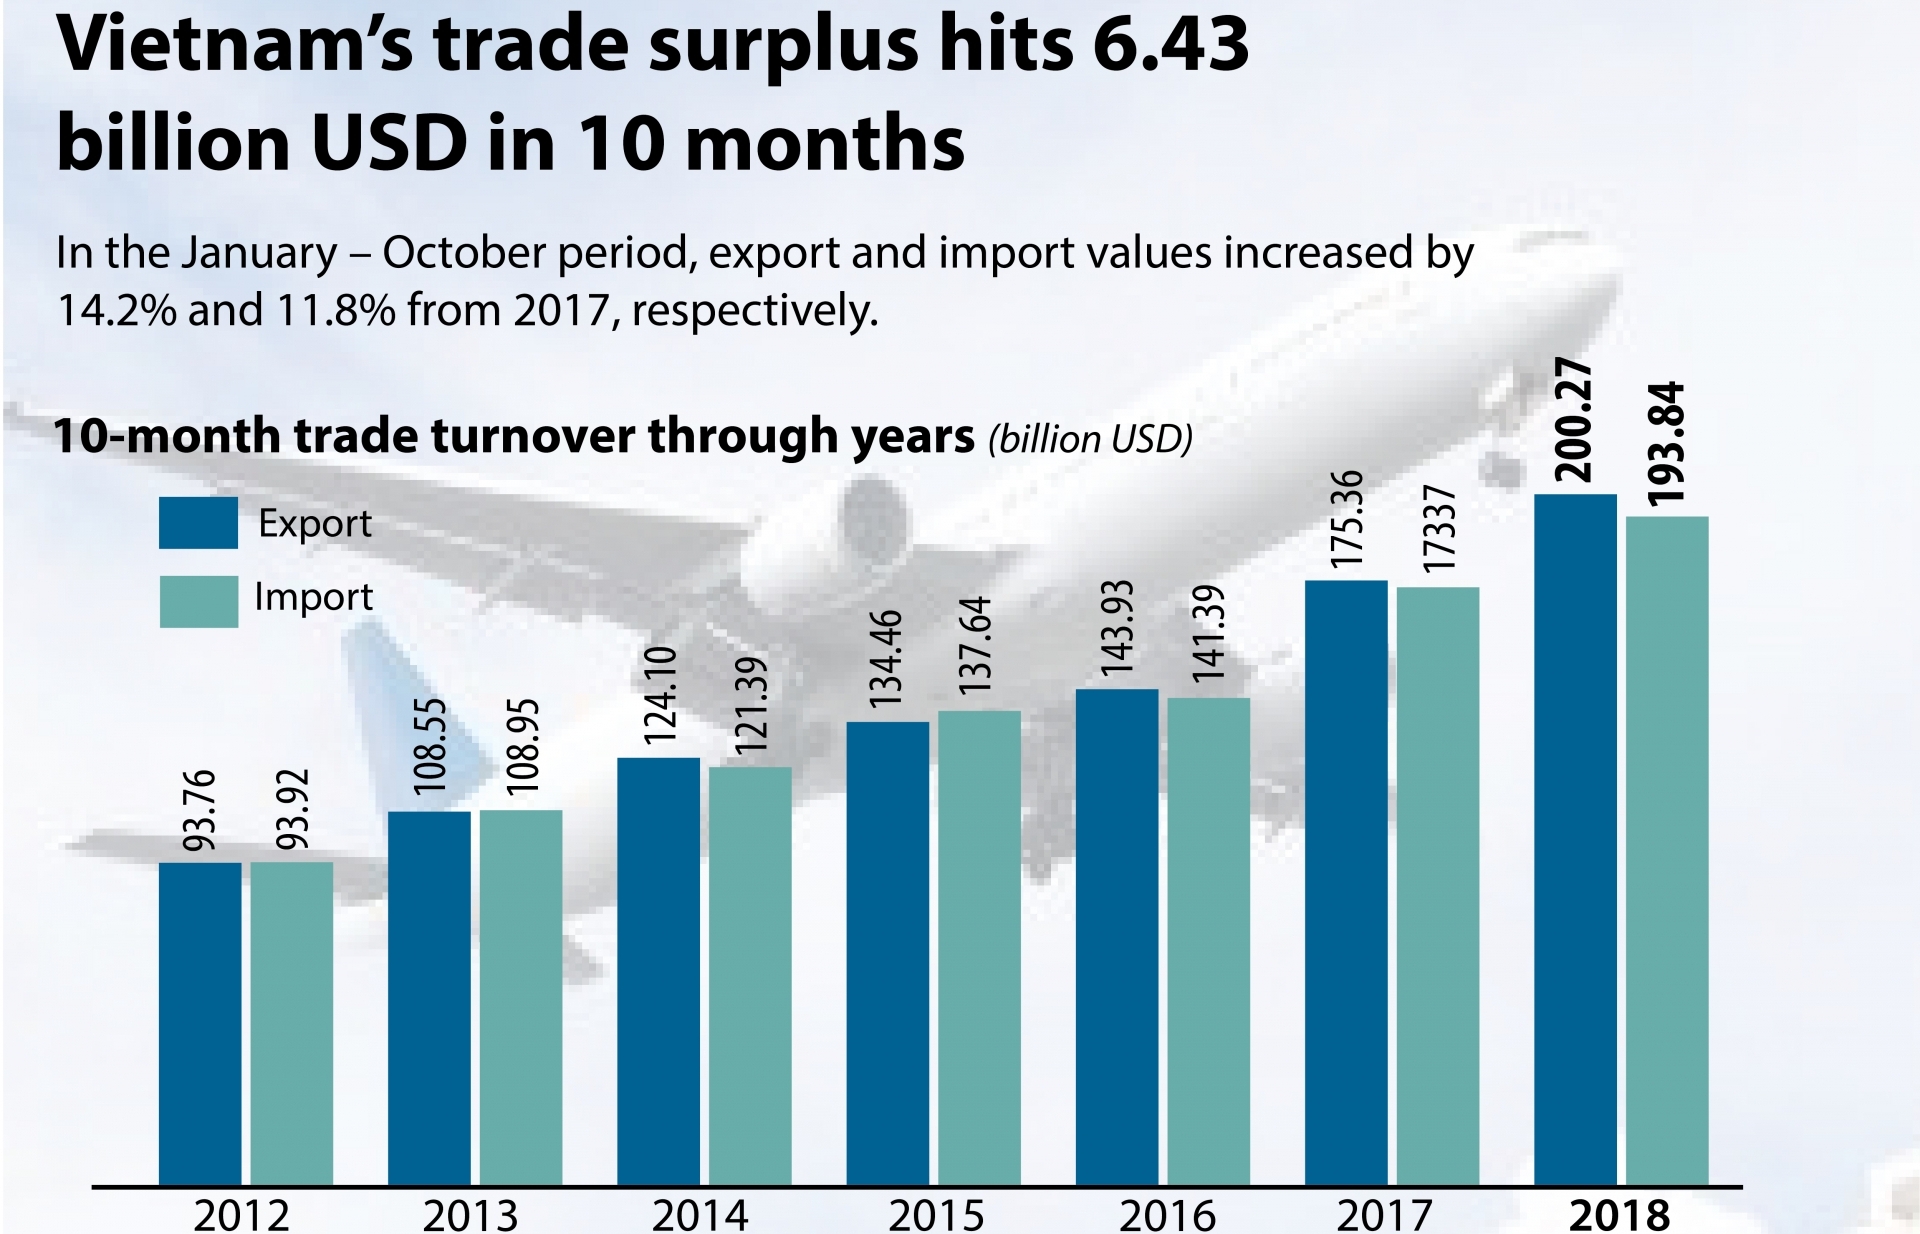 Vietnam's trade surplus hits 6.43 bln in 10 months